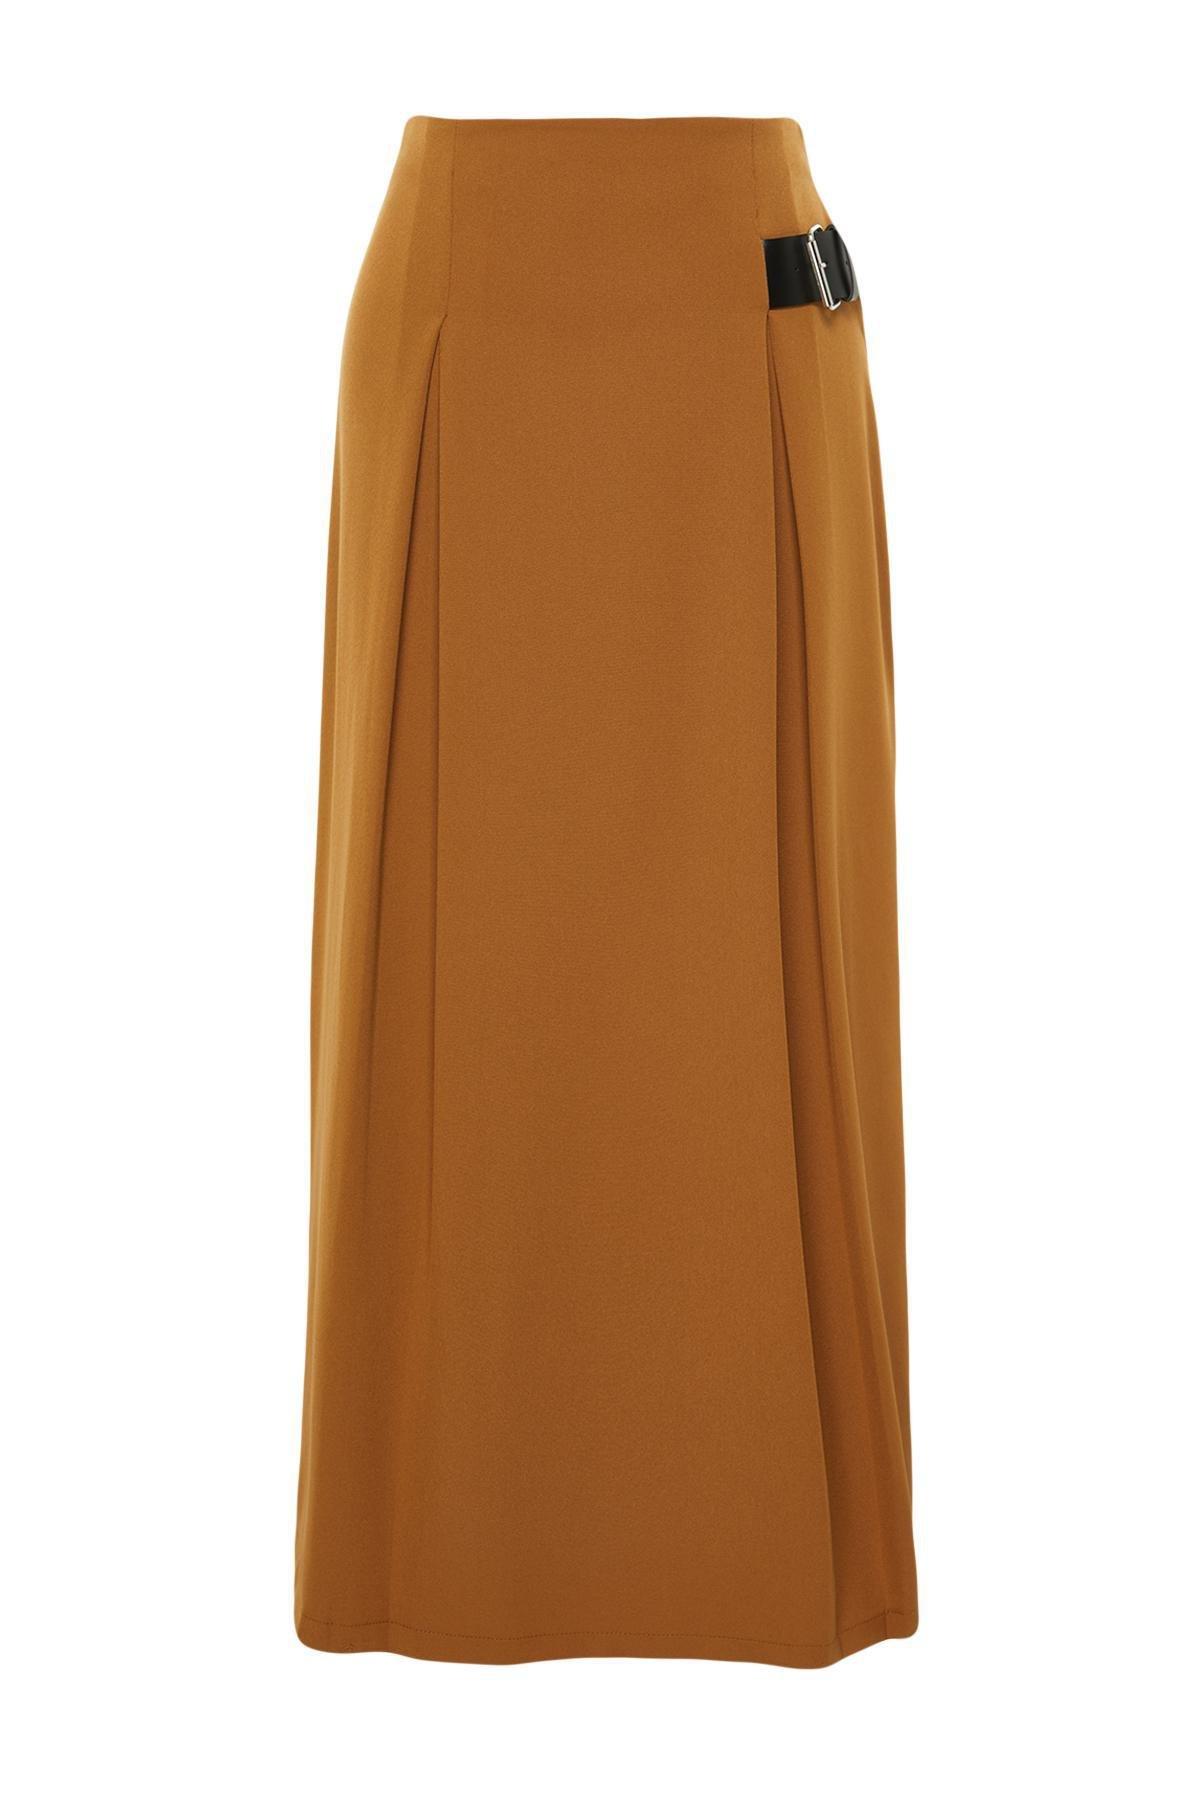 Trendyol - Brown Detailed Woven Skirt